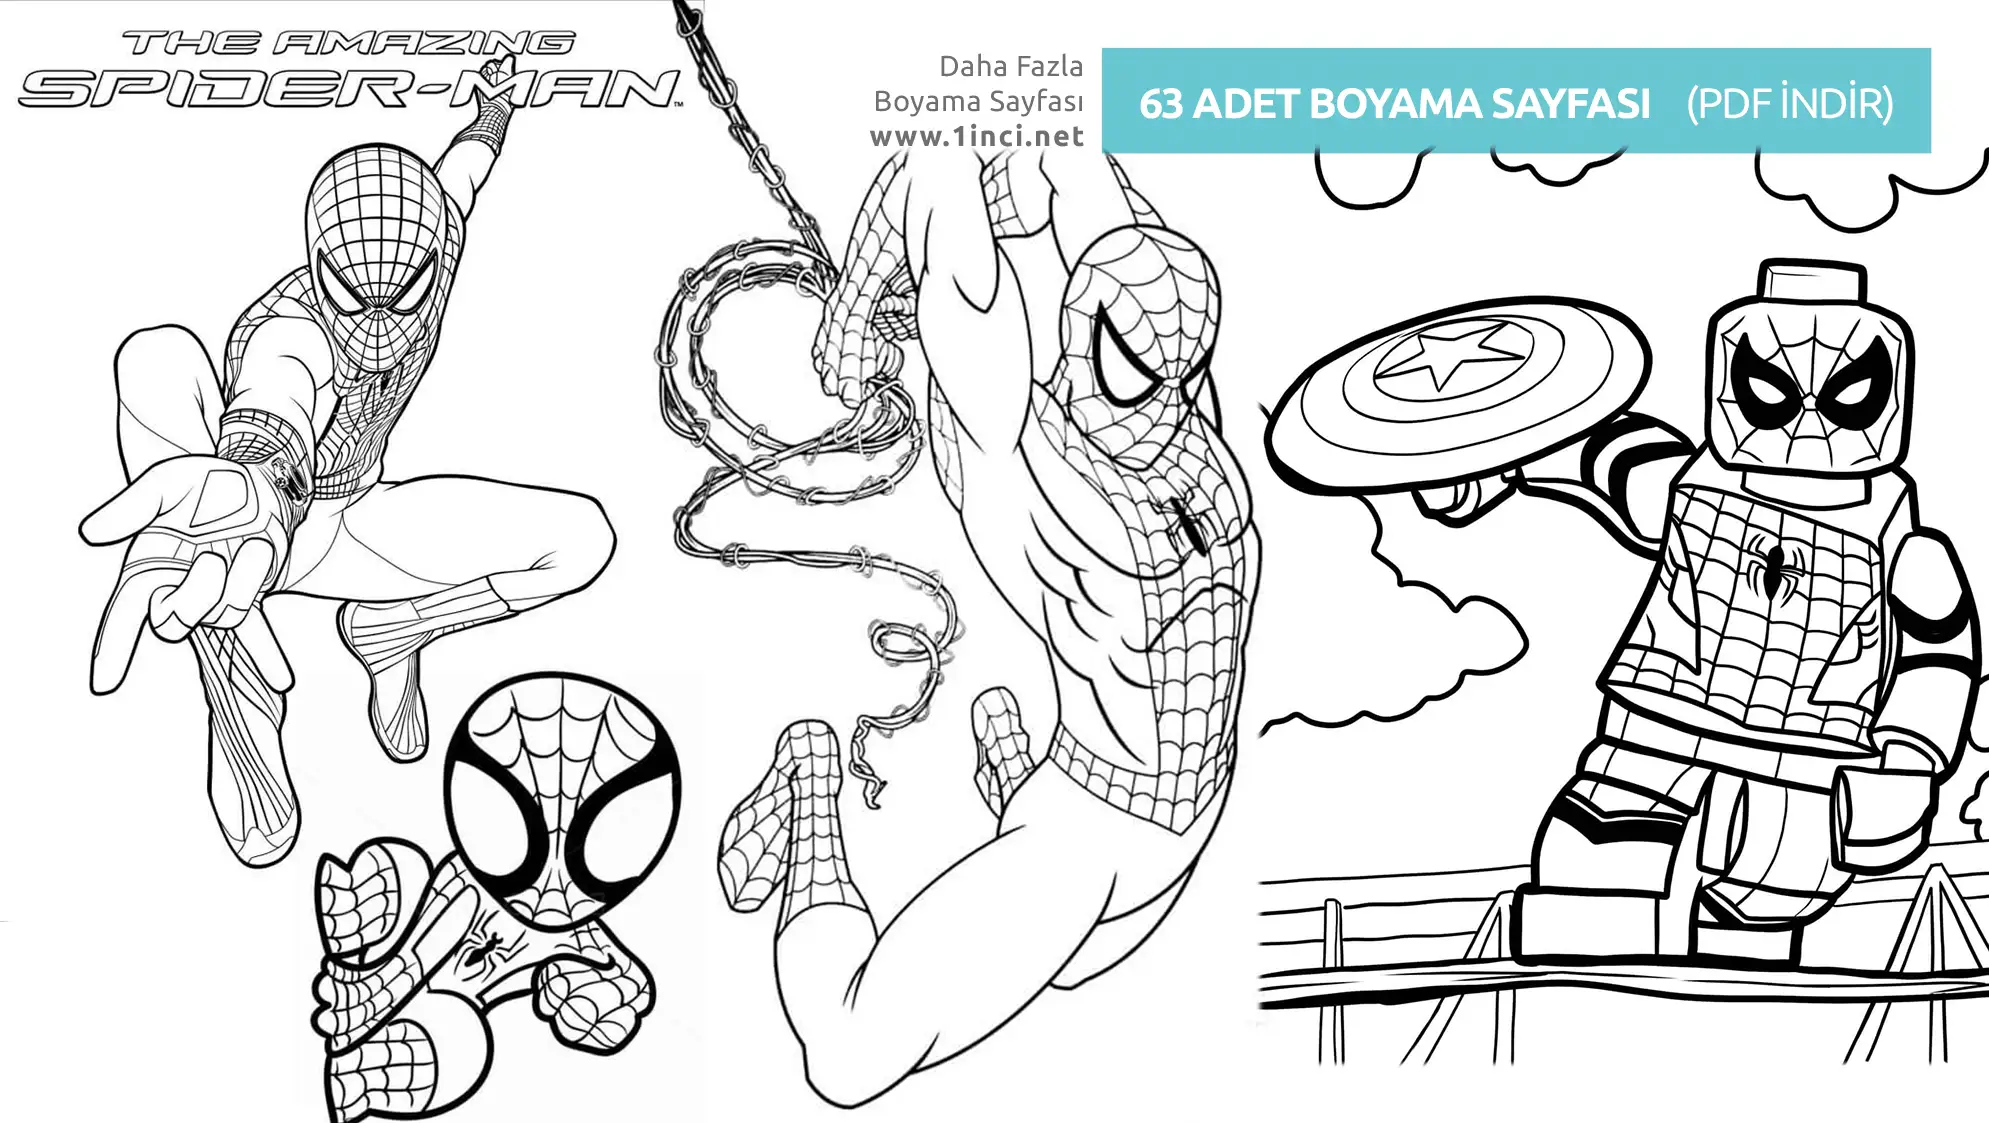 Orumcek Adam Boyama Spider Man 1inci.net KAPAK